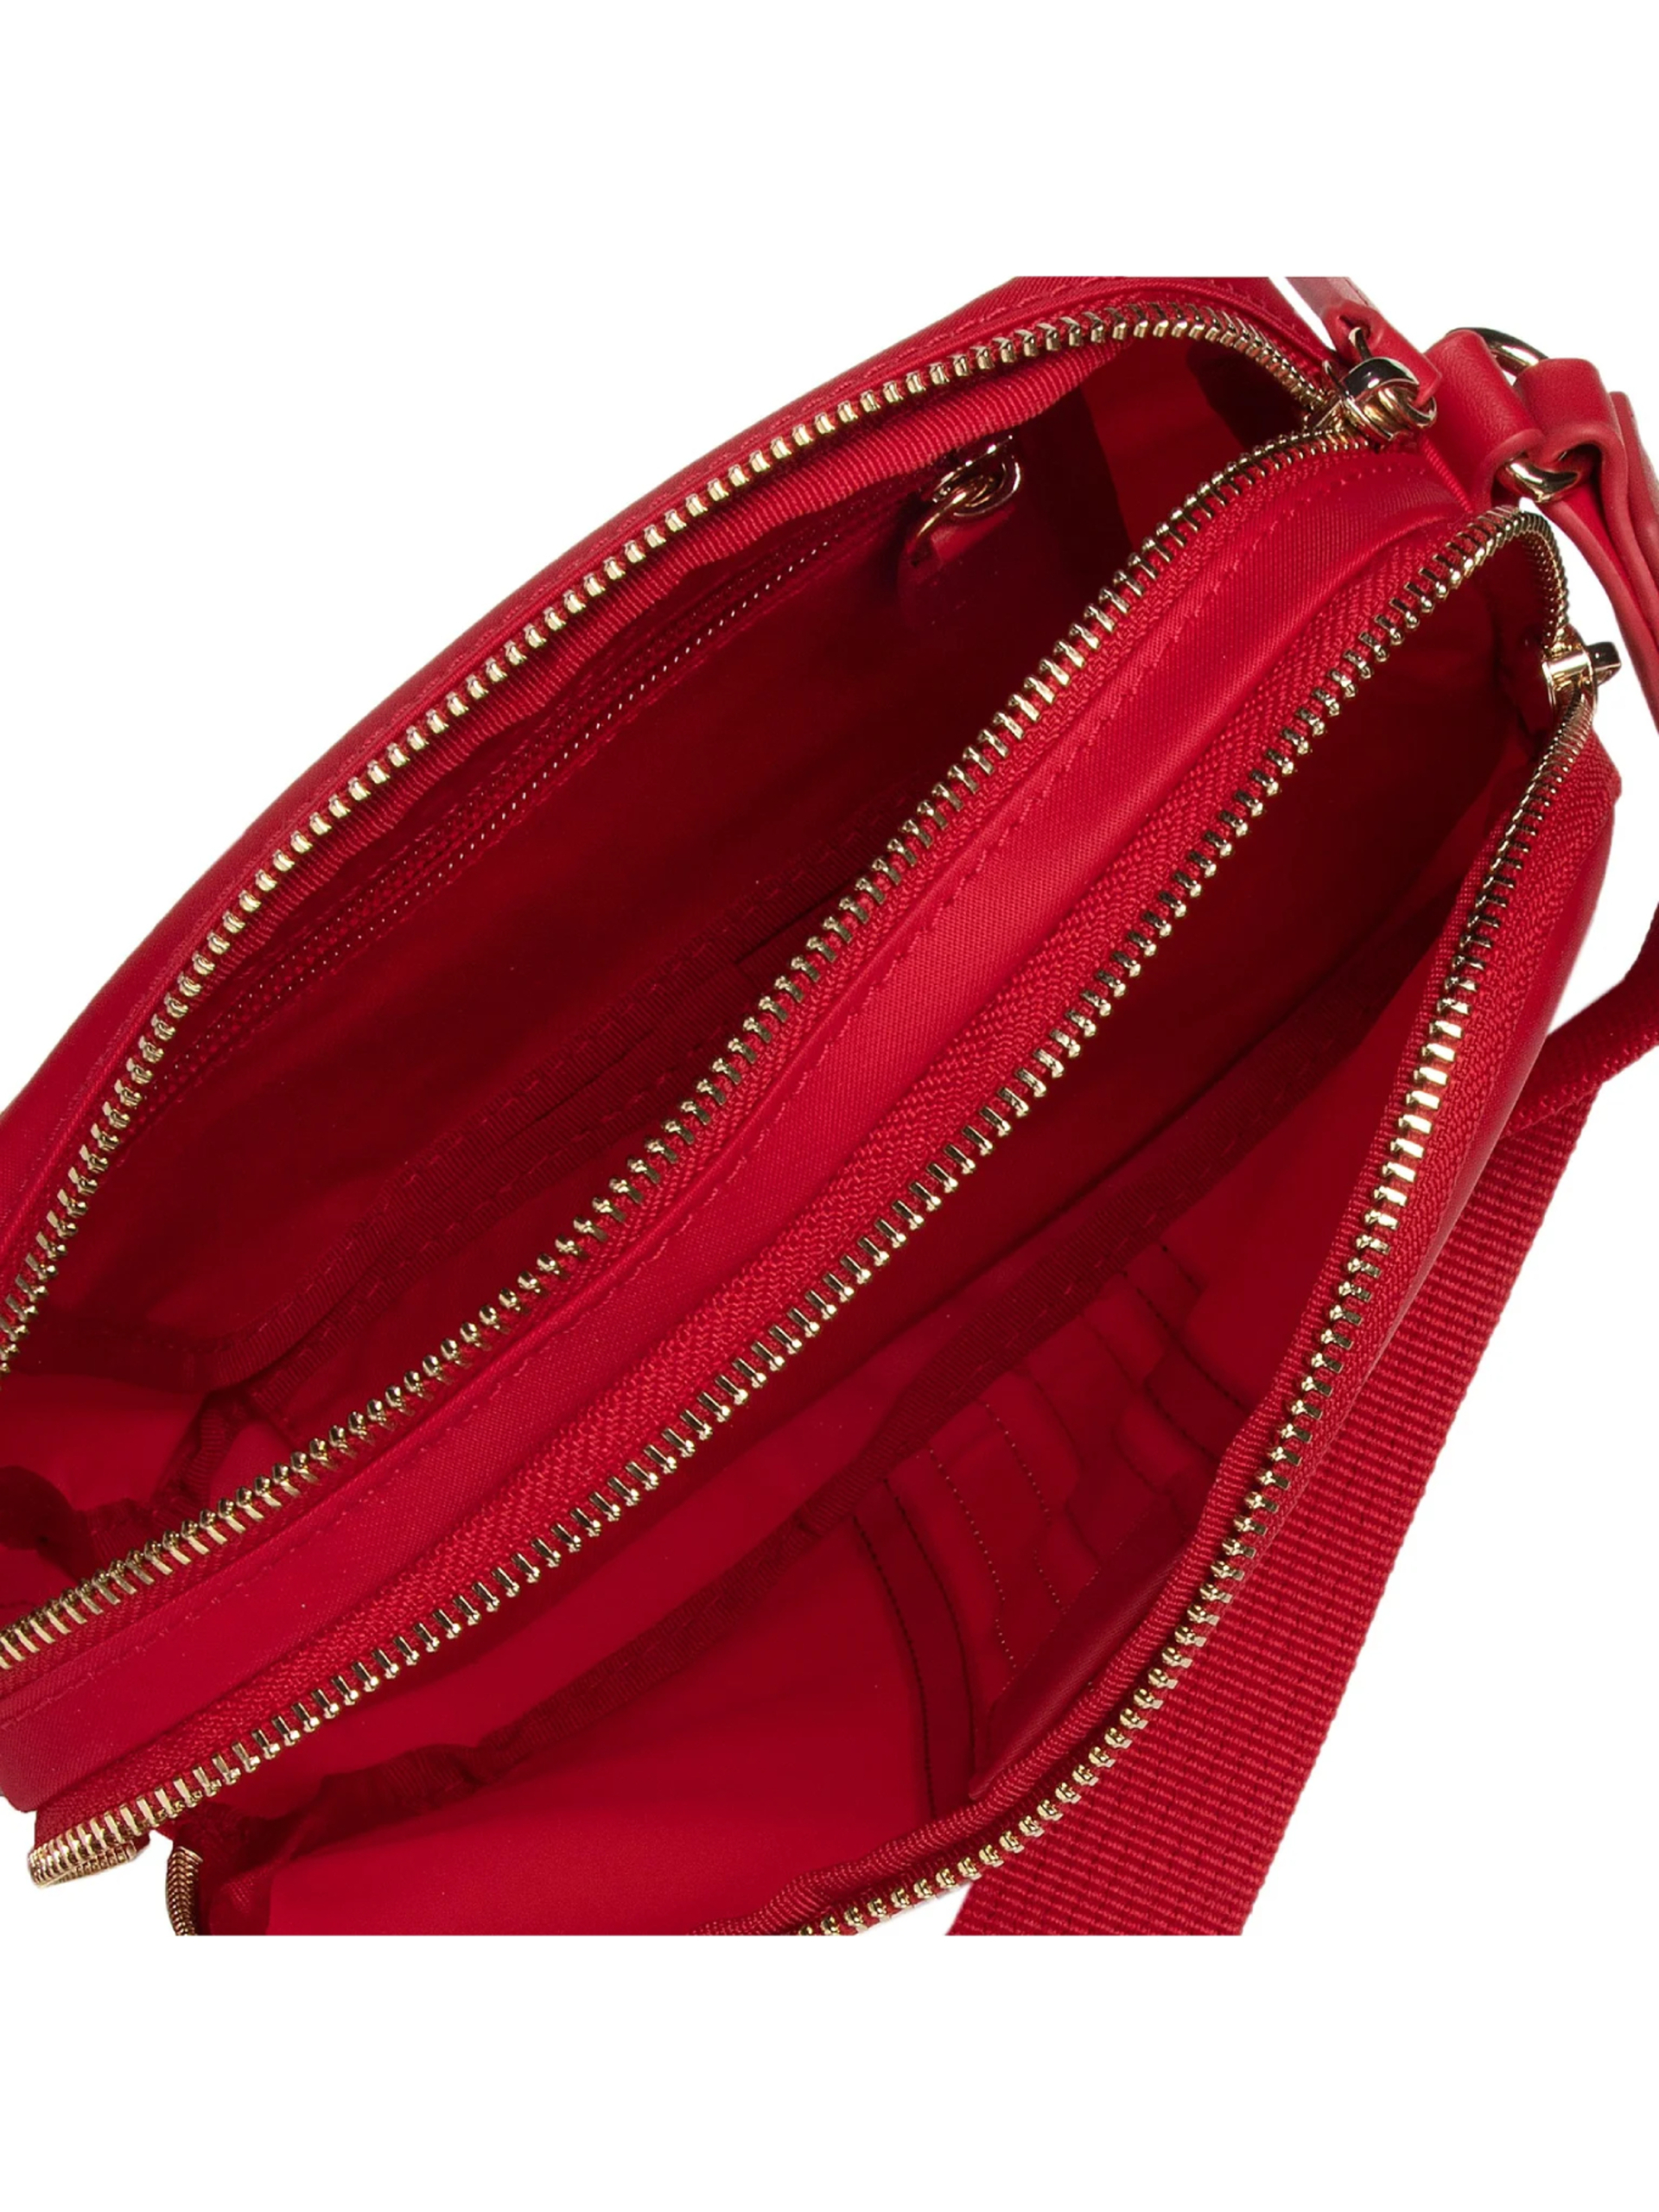 Tommy Hilfiger dámská červená kabelka - OS (XLG)